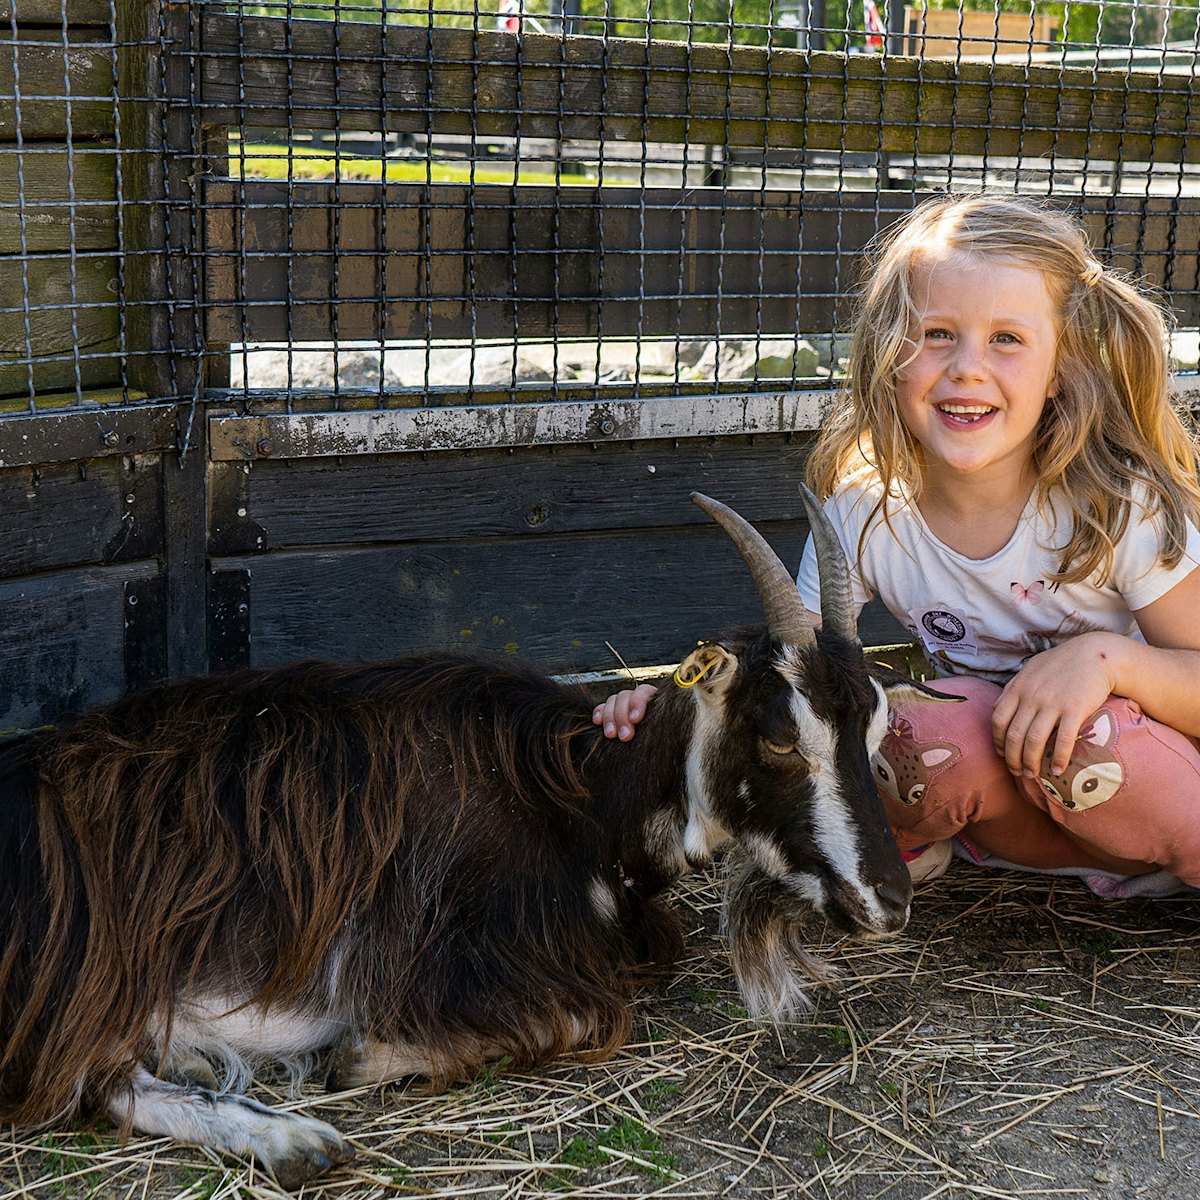 Ekeberg Animal Park, little girl petting a goat